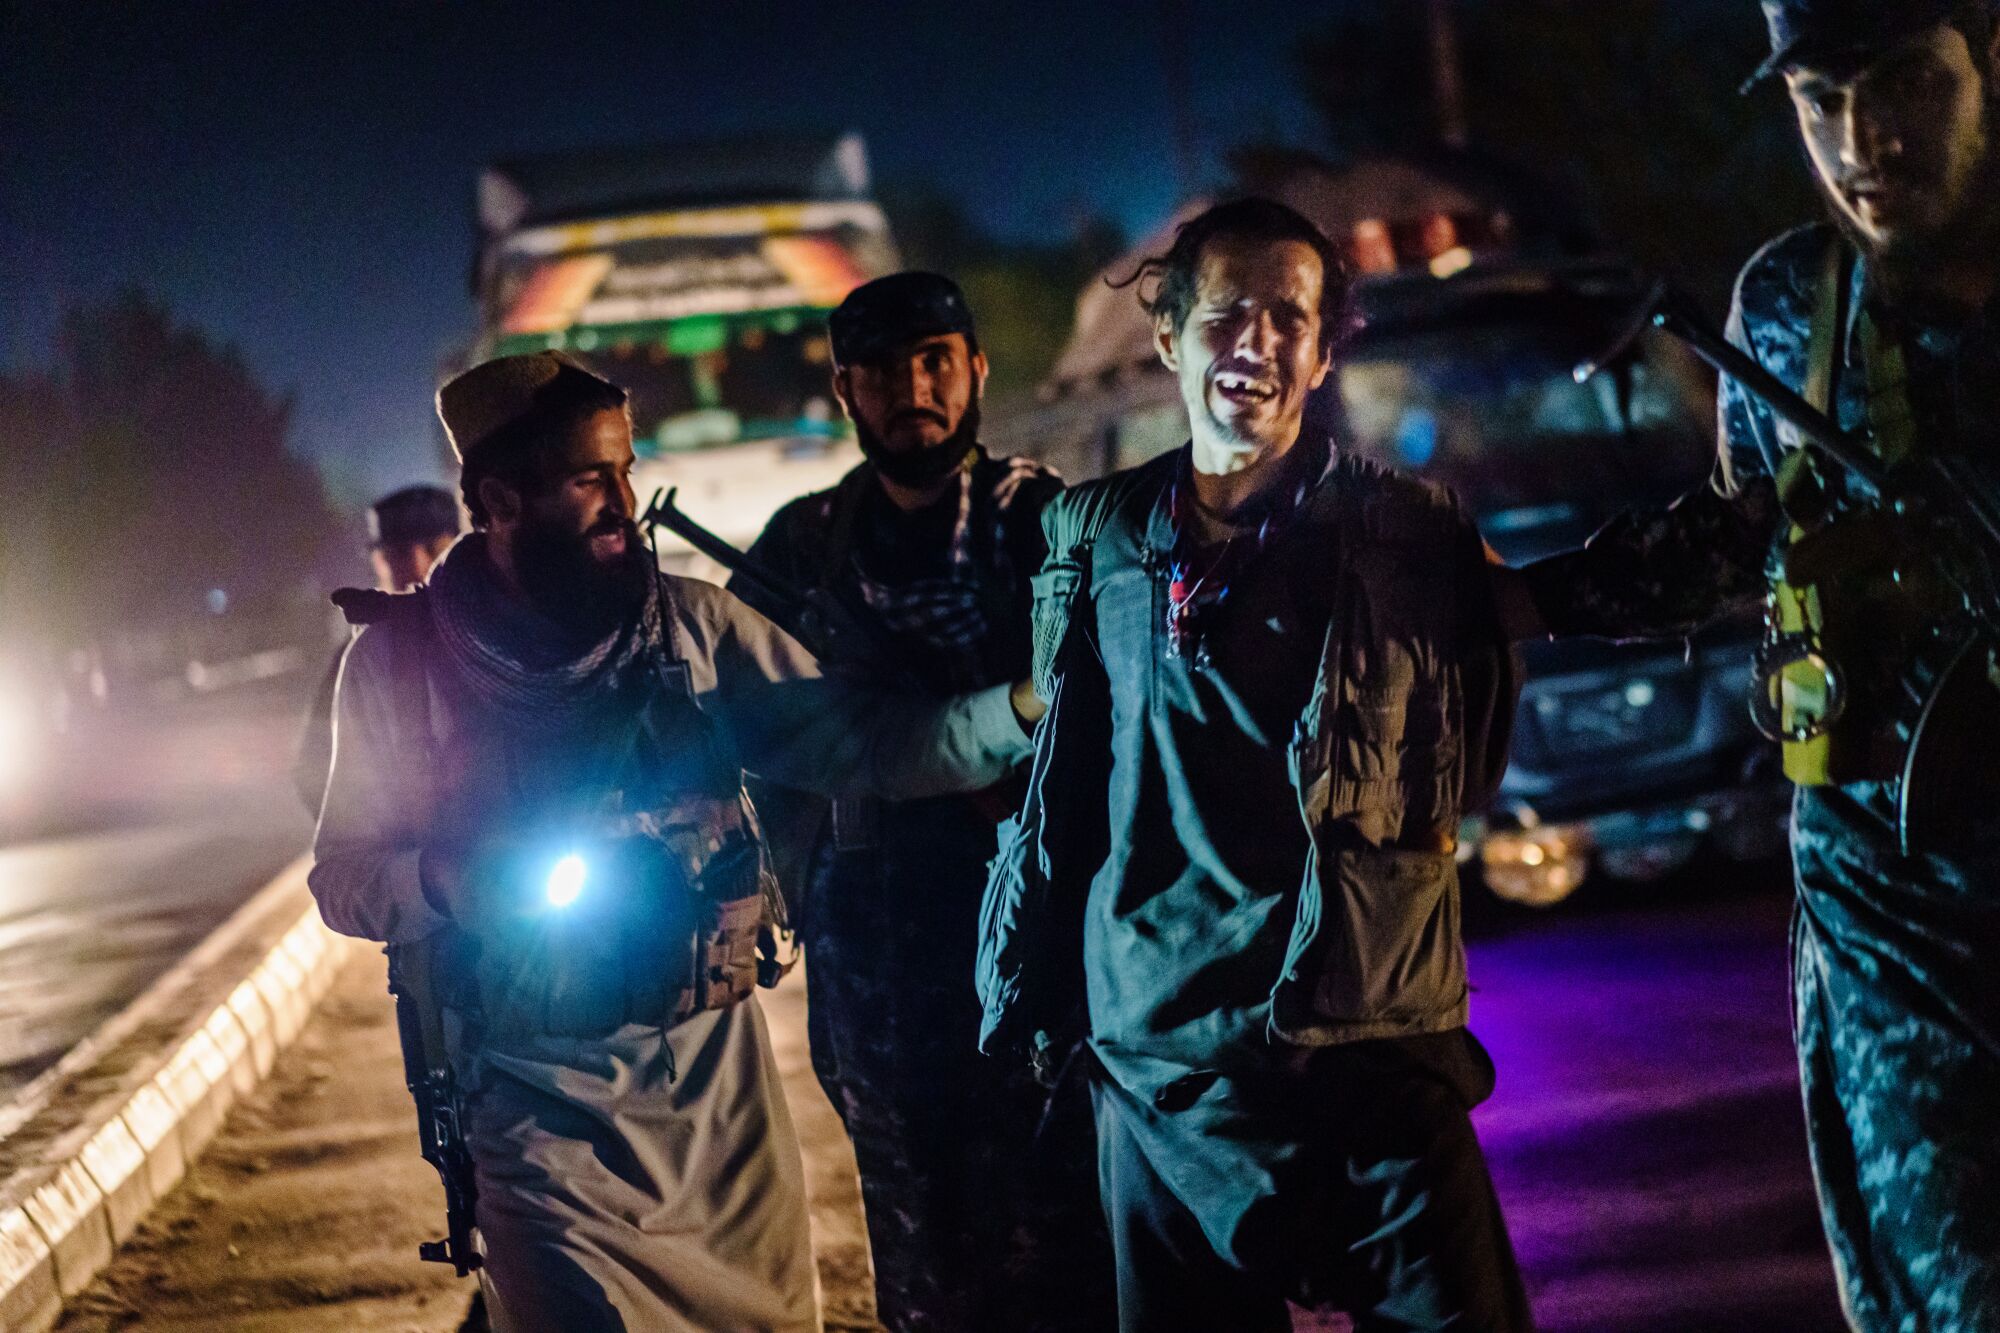 Taliban members take a man into custody.